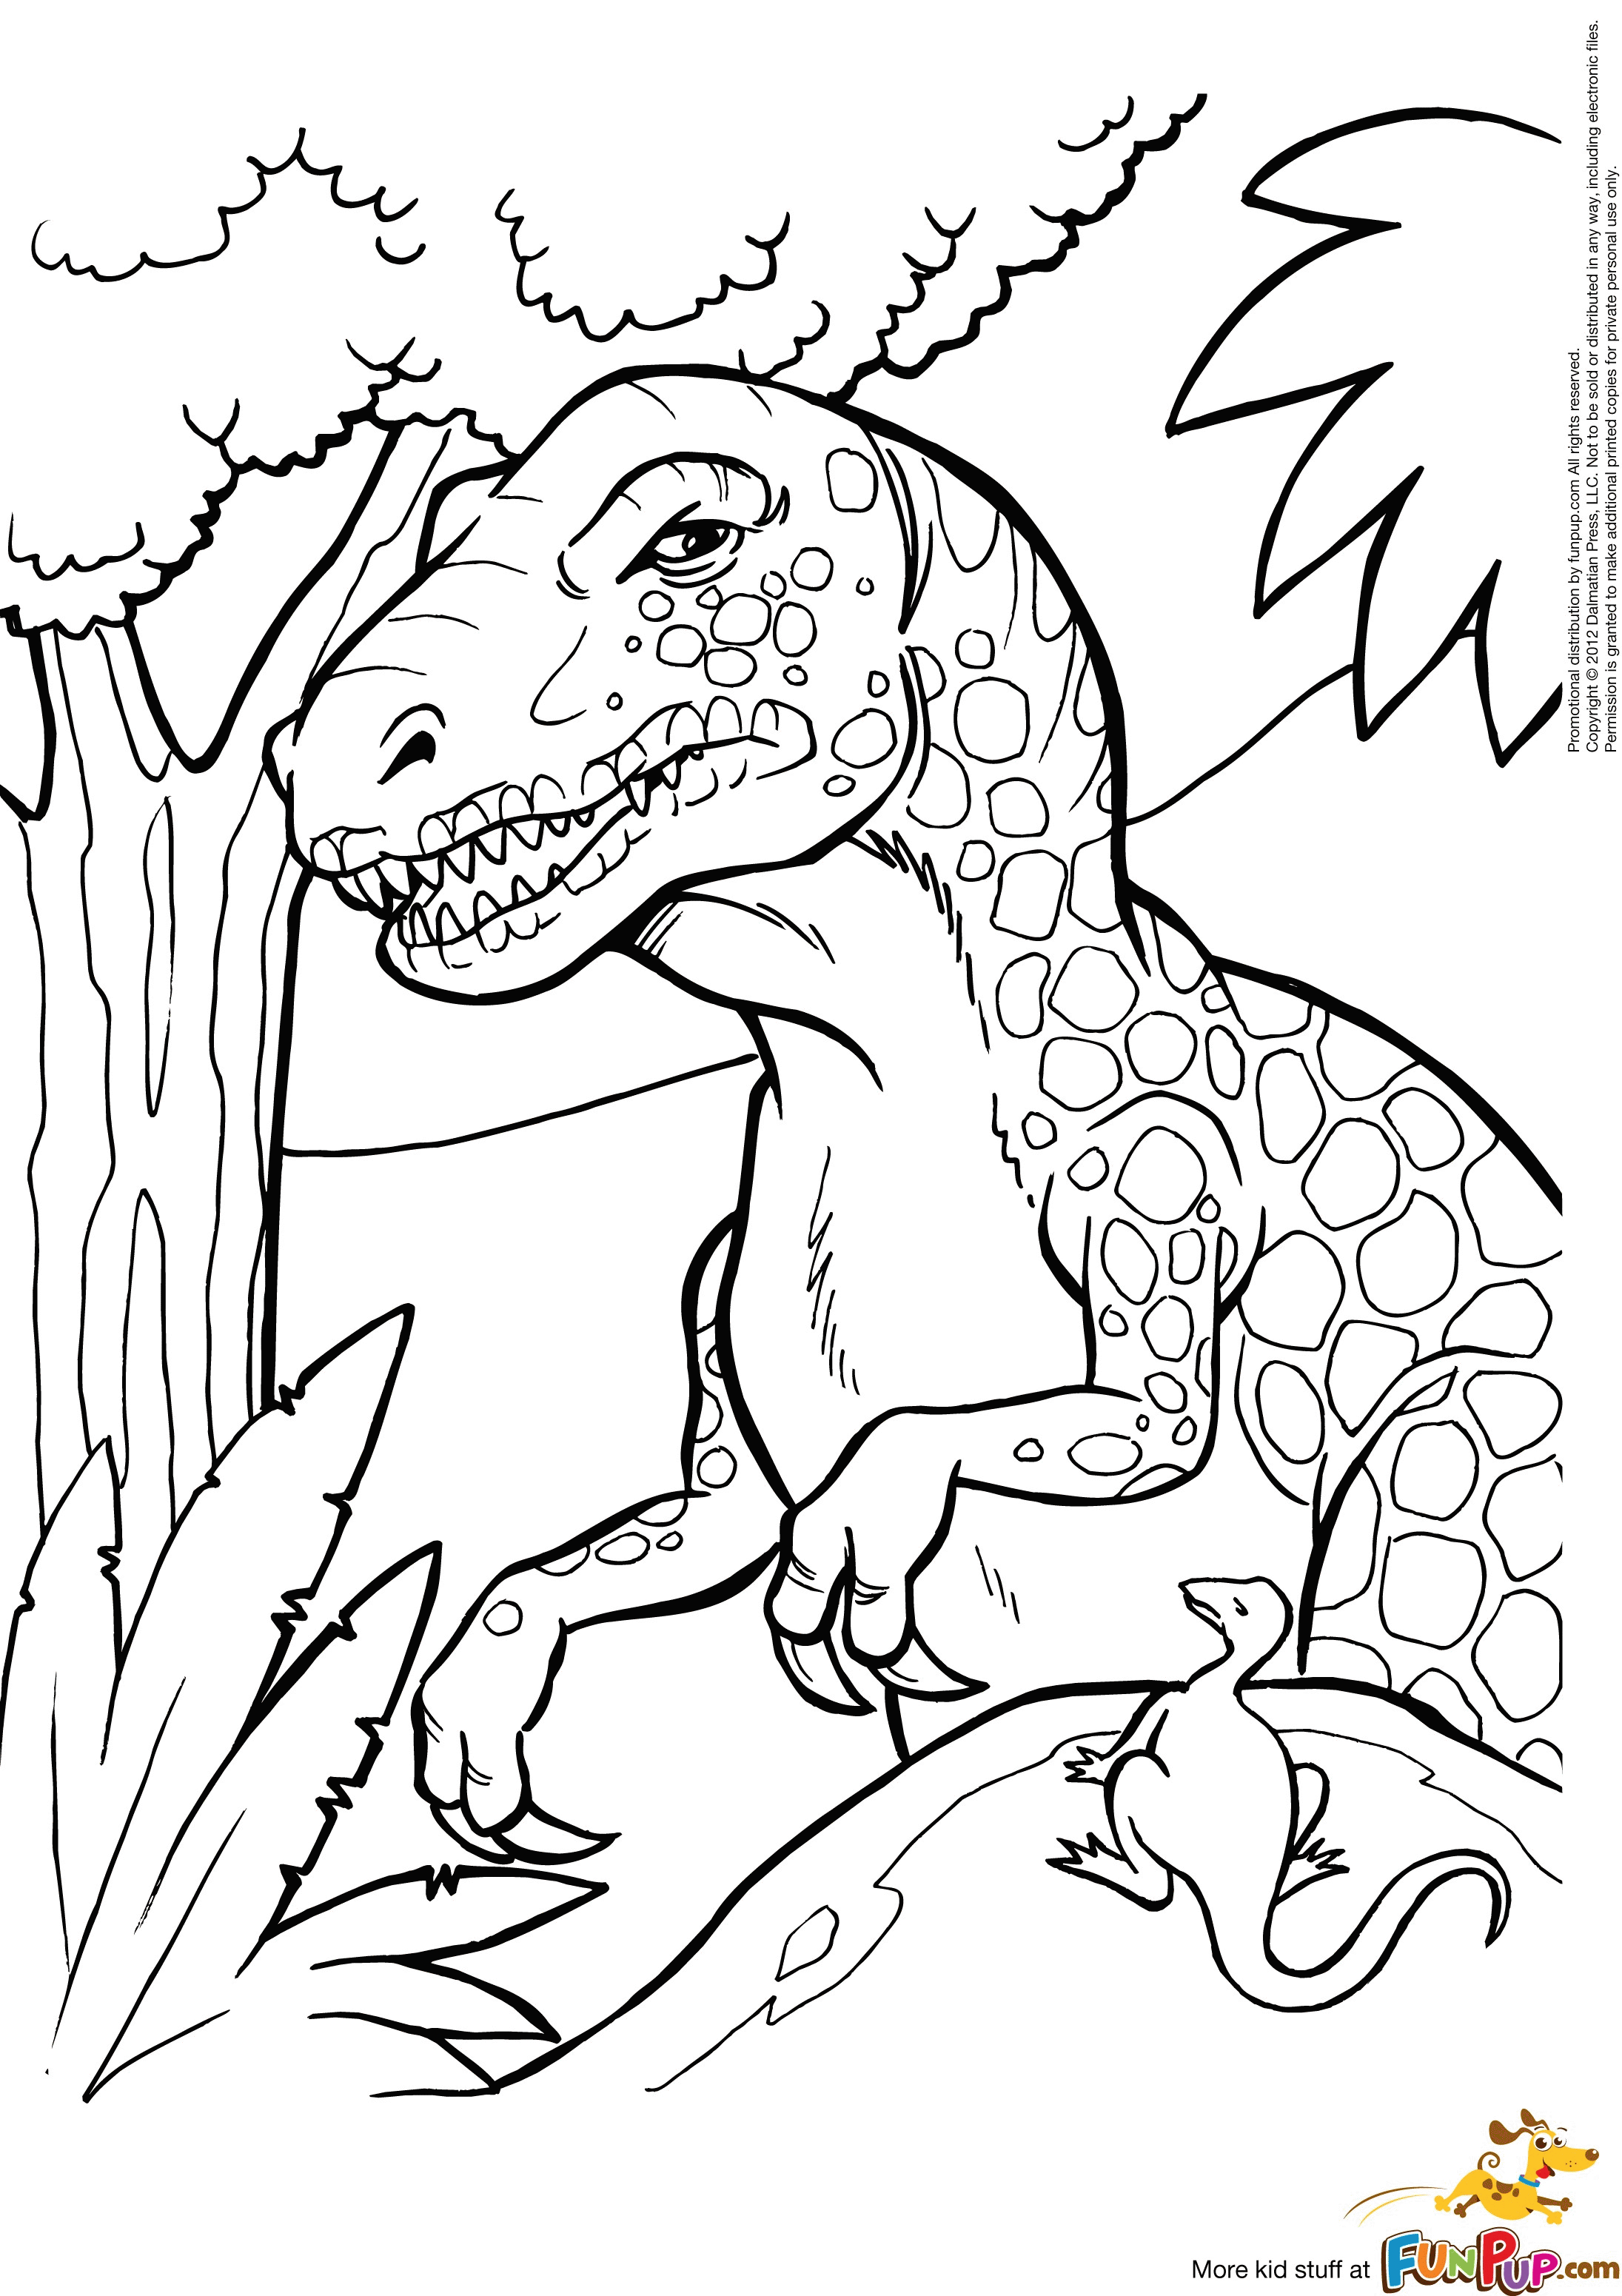 Динозавры раскраска а4. Динозавры / раскраска. Динозавр раскраска для детей. Рисунок динозавра для раскрашивания. Раскраска "Динозаврики".